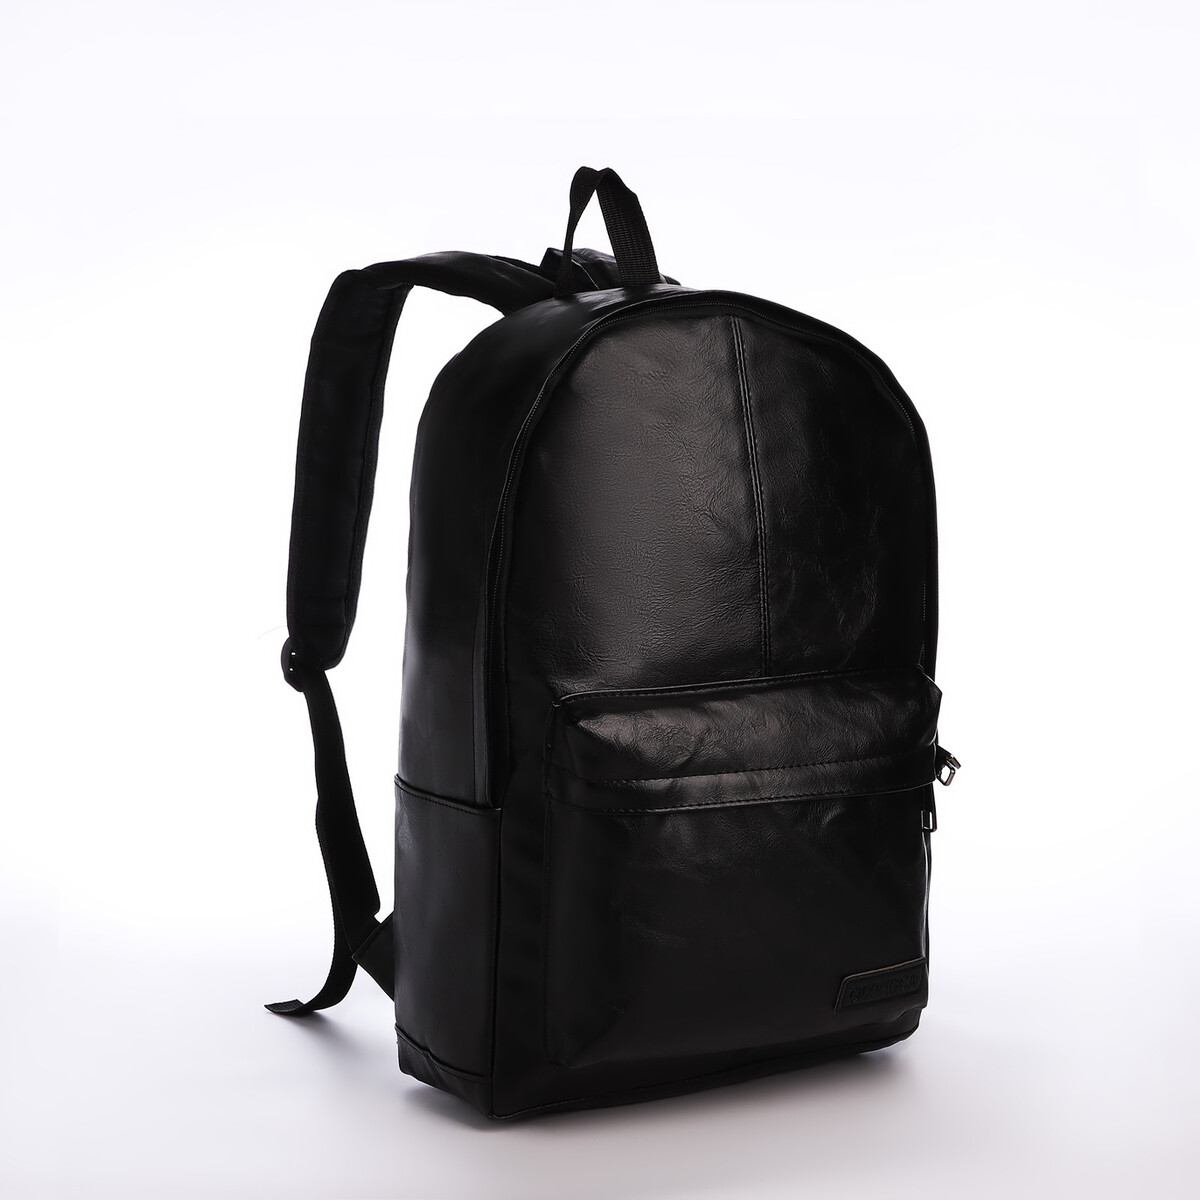 Рюкзак городской из искусственной кожи на молнии, 3 кармана, цвет черный pixie рюкзак городской 267103